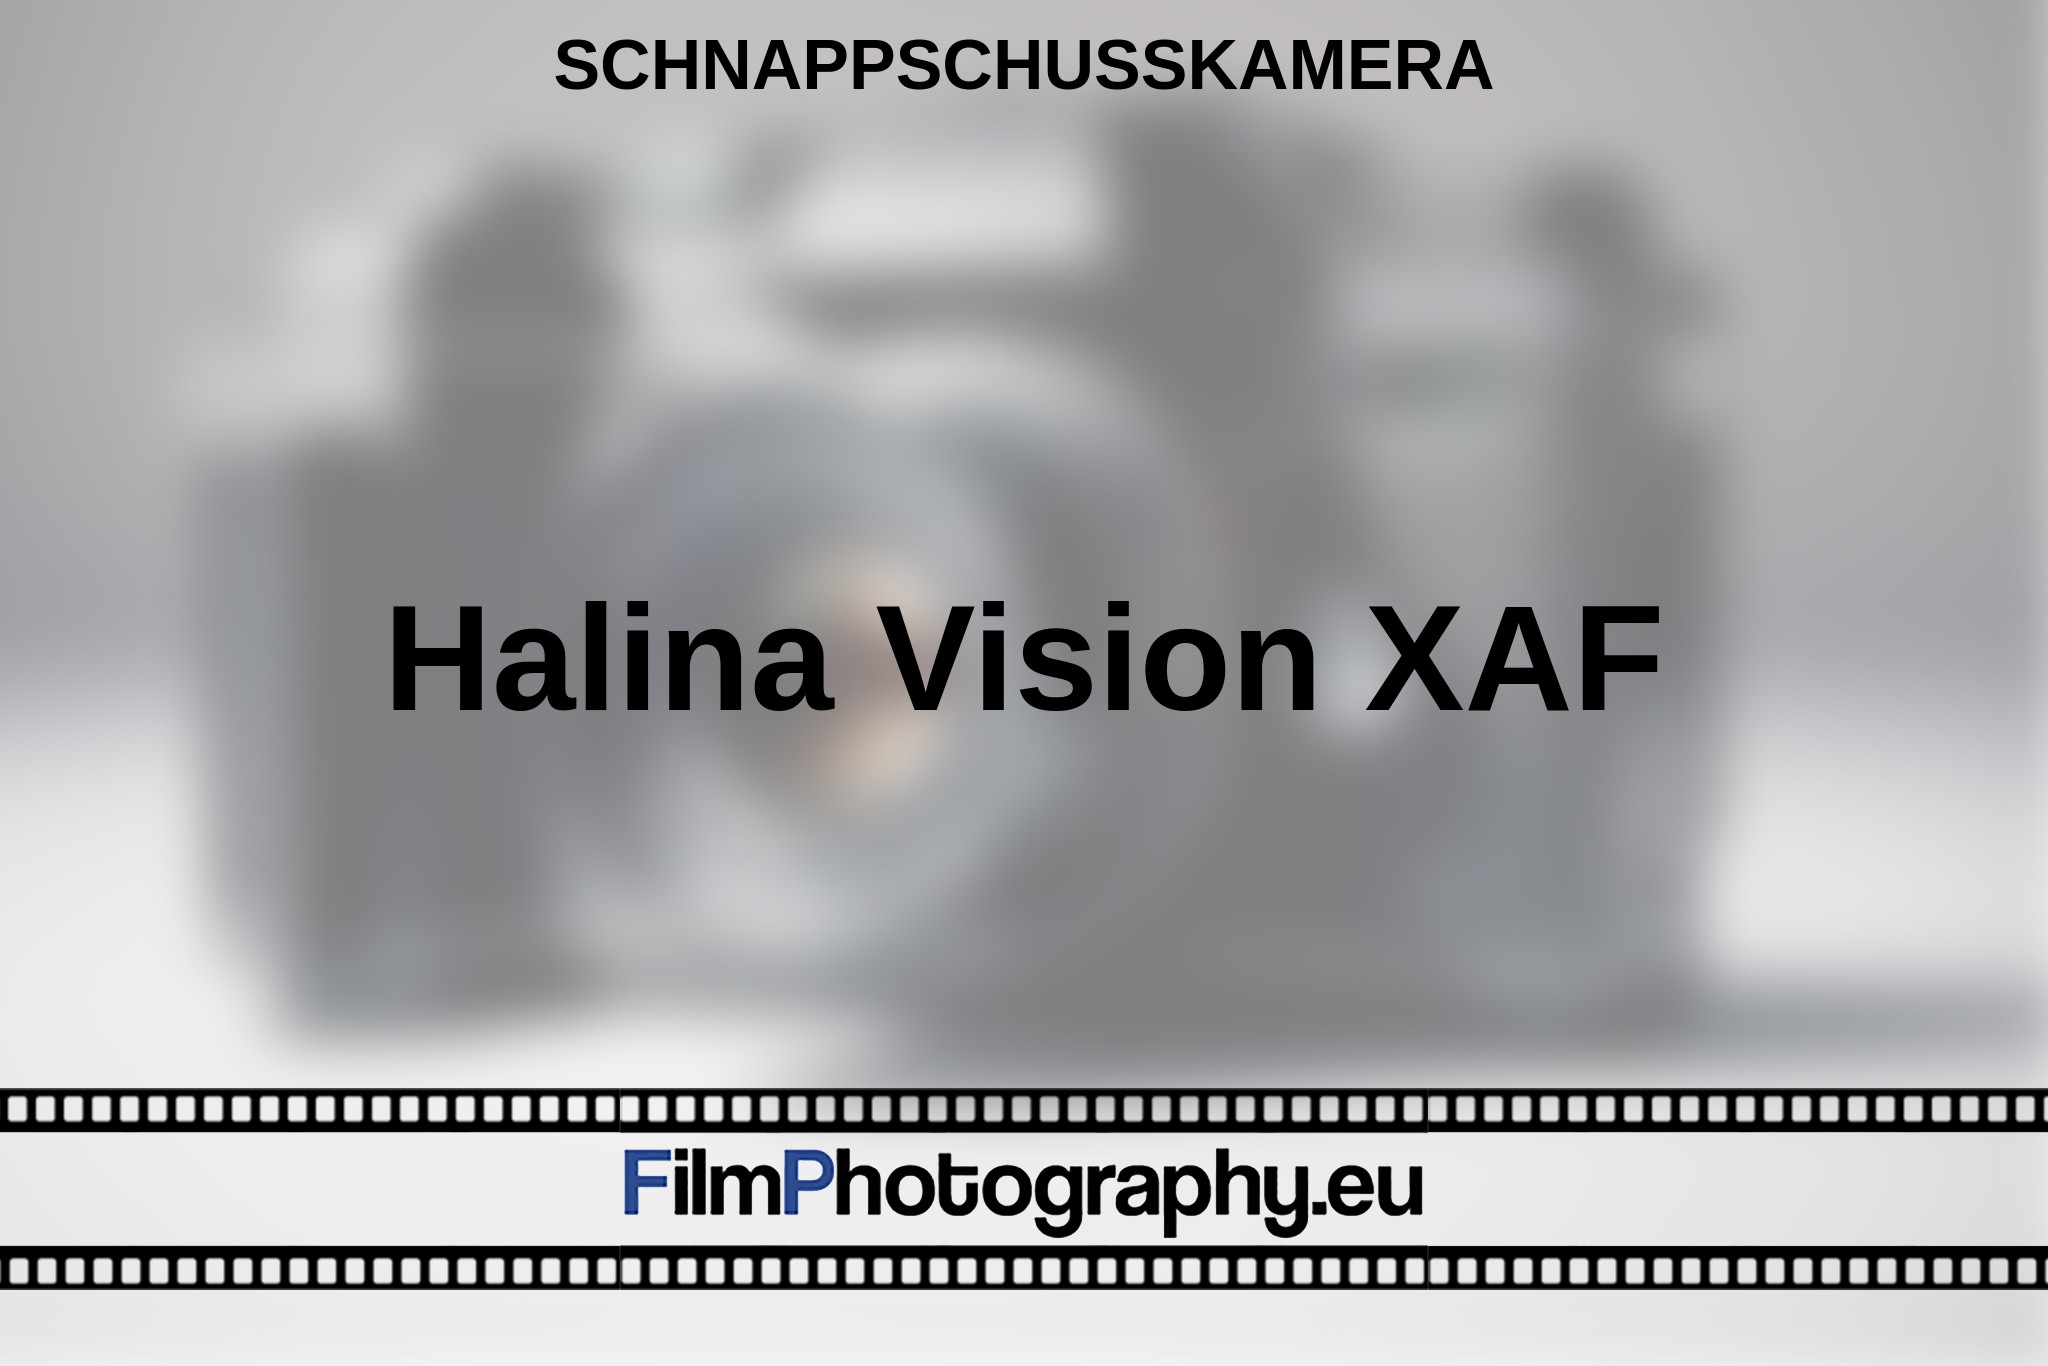 halina-vision-xaf-schnappschusskamera-bnv.jpg